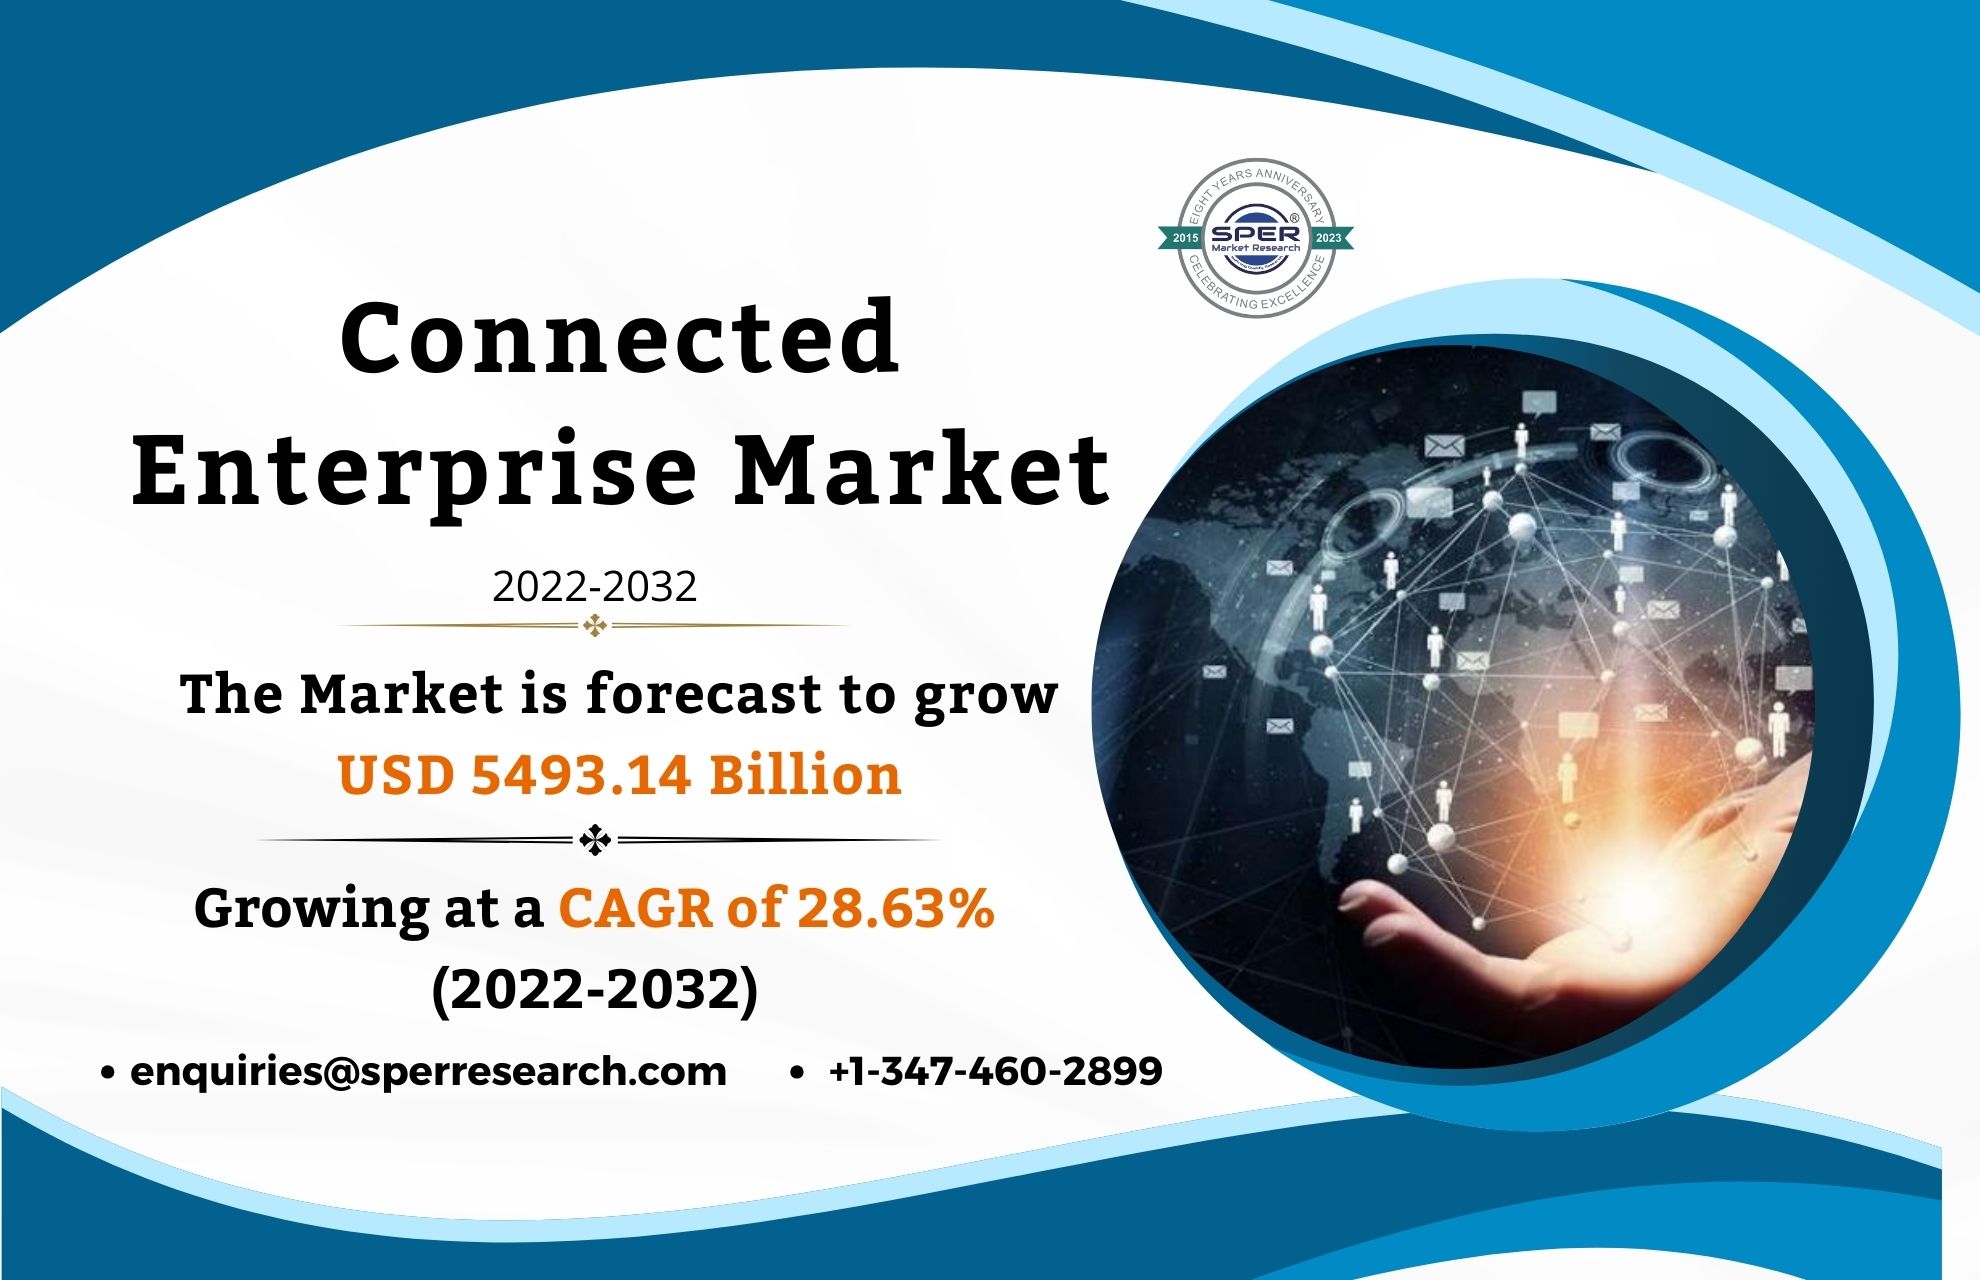 Connected Enterprise Market